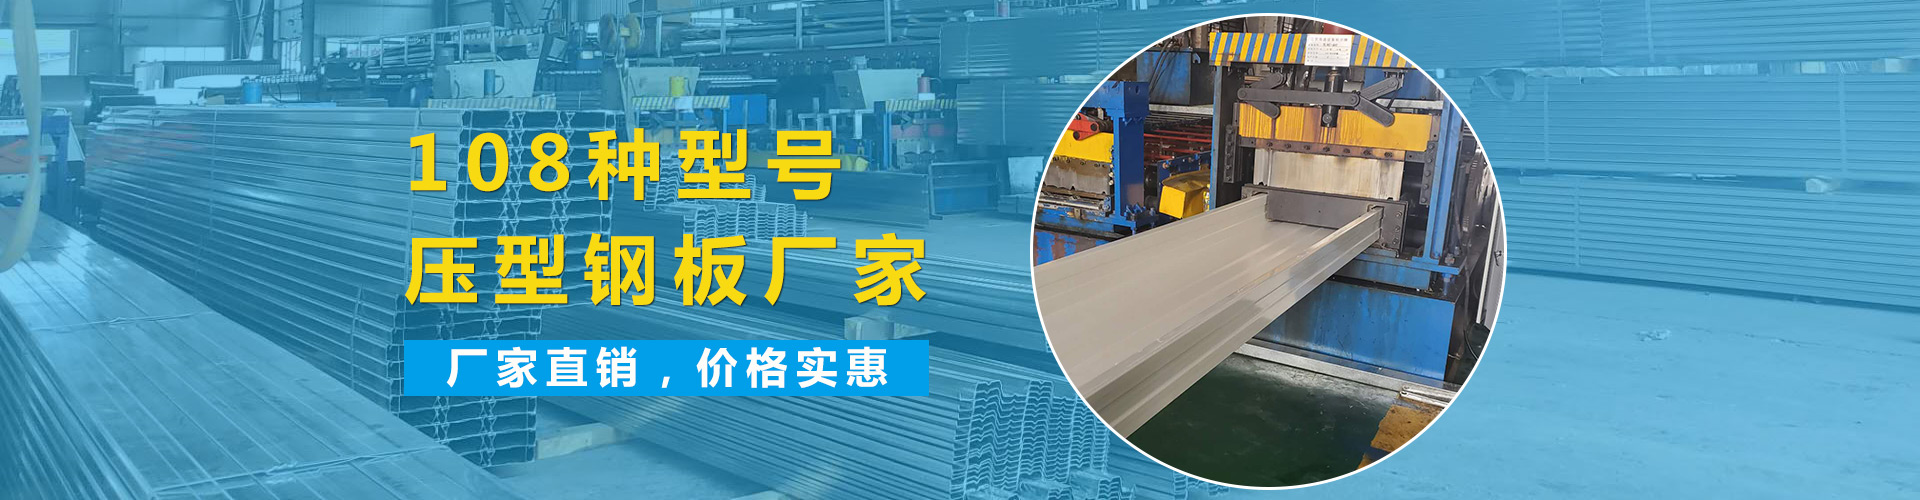 宁波YX51-274-820楼承板楼承板生产厂家